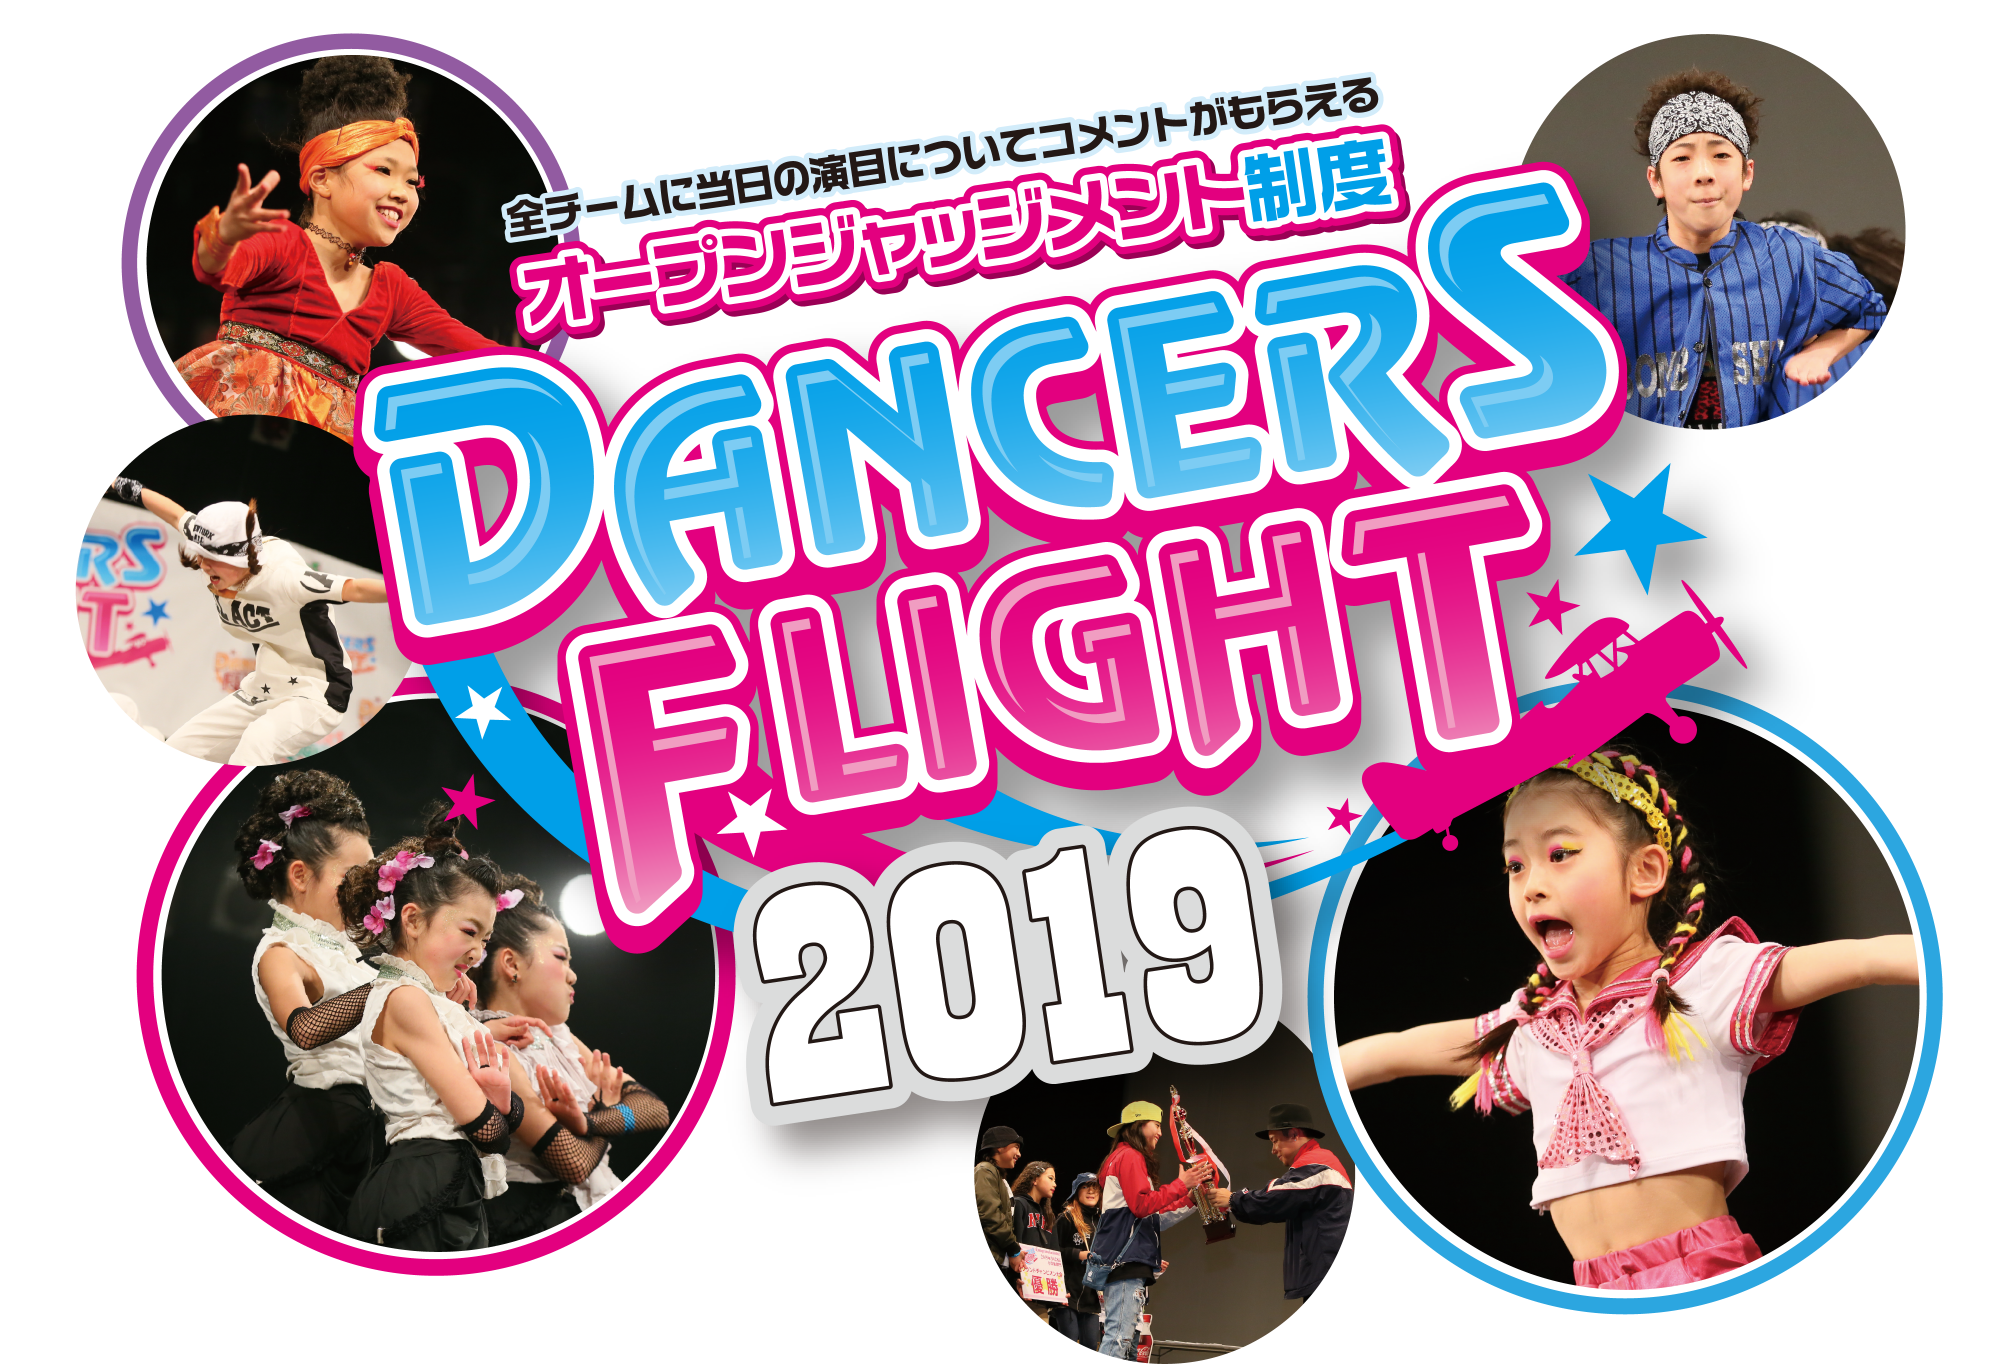 Dancers Flight 2019